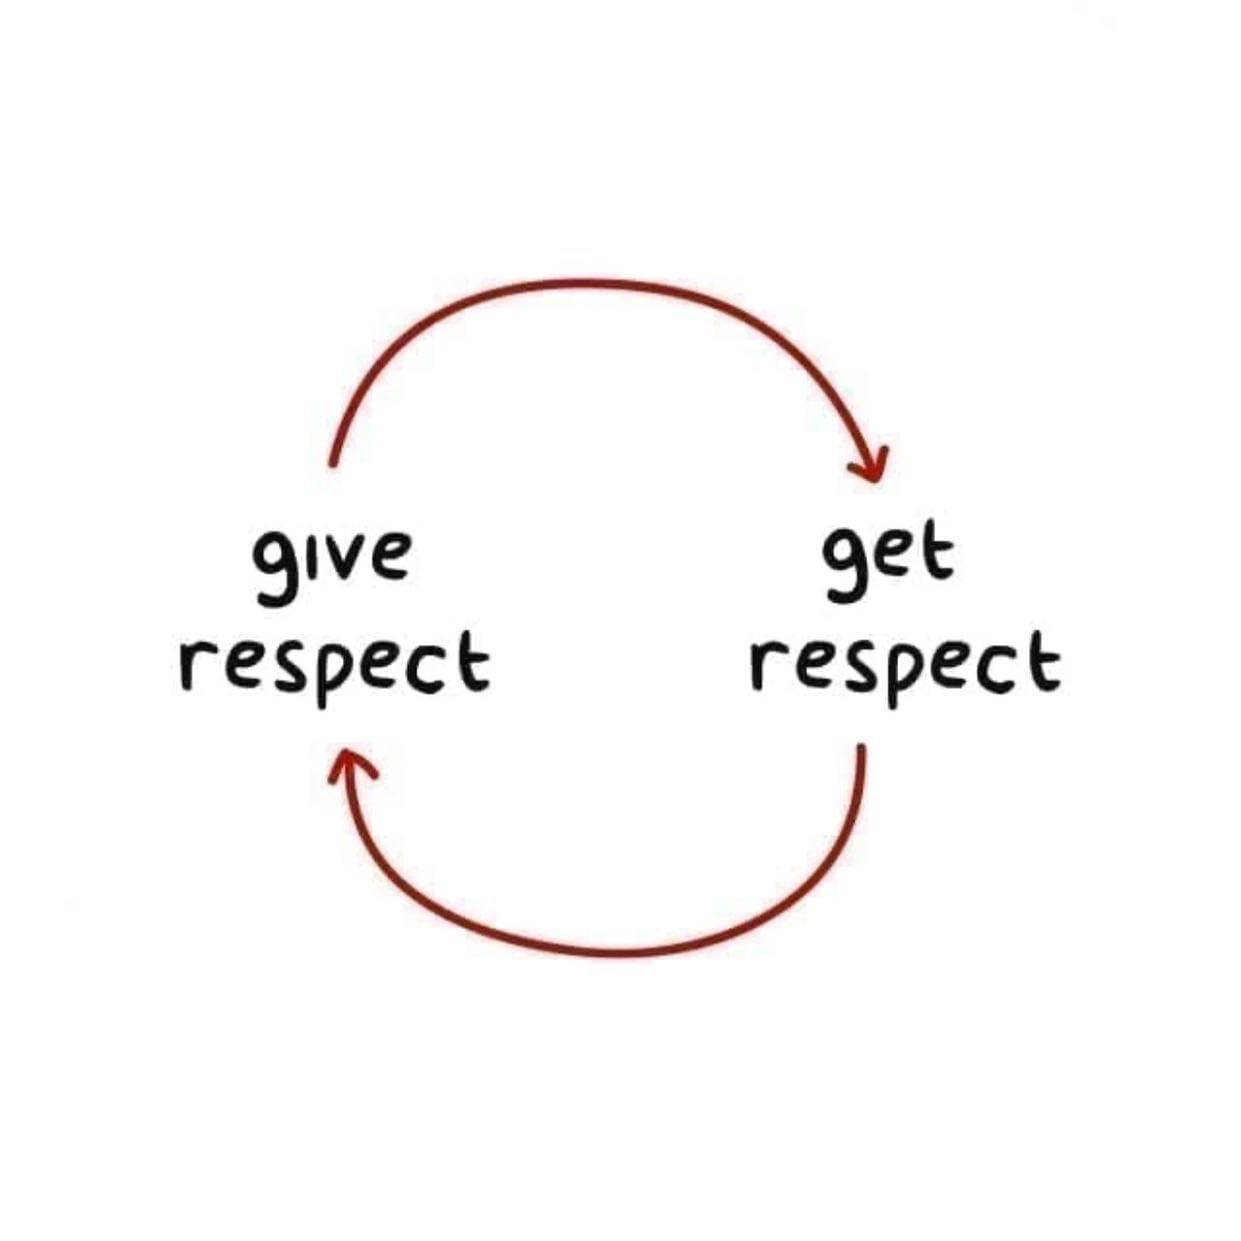 respect to respect - give respect get respect